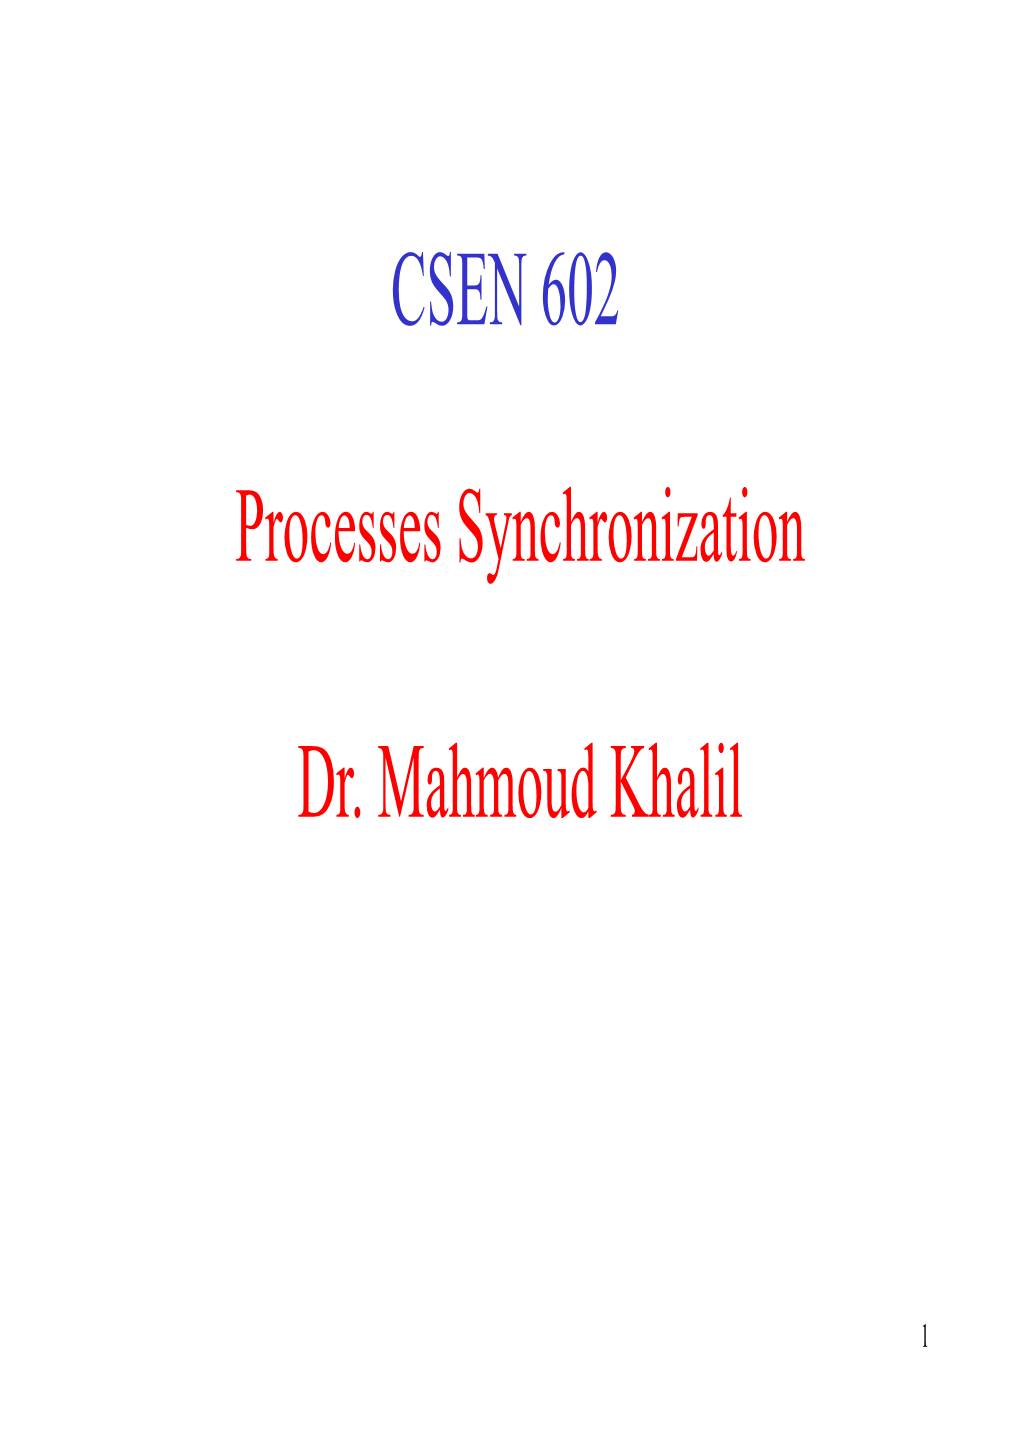 Processes Synchronization Dr. Mahmoud Khalil CSEN